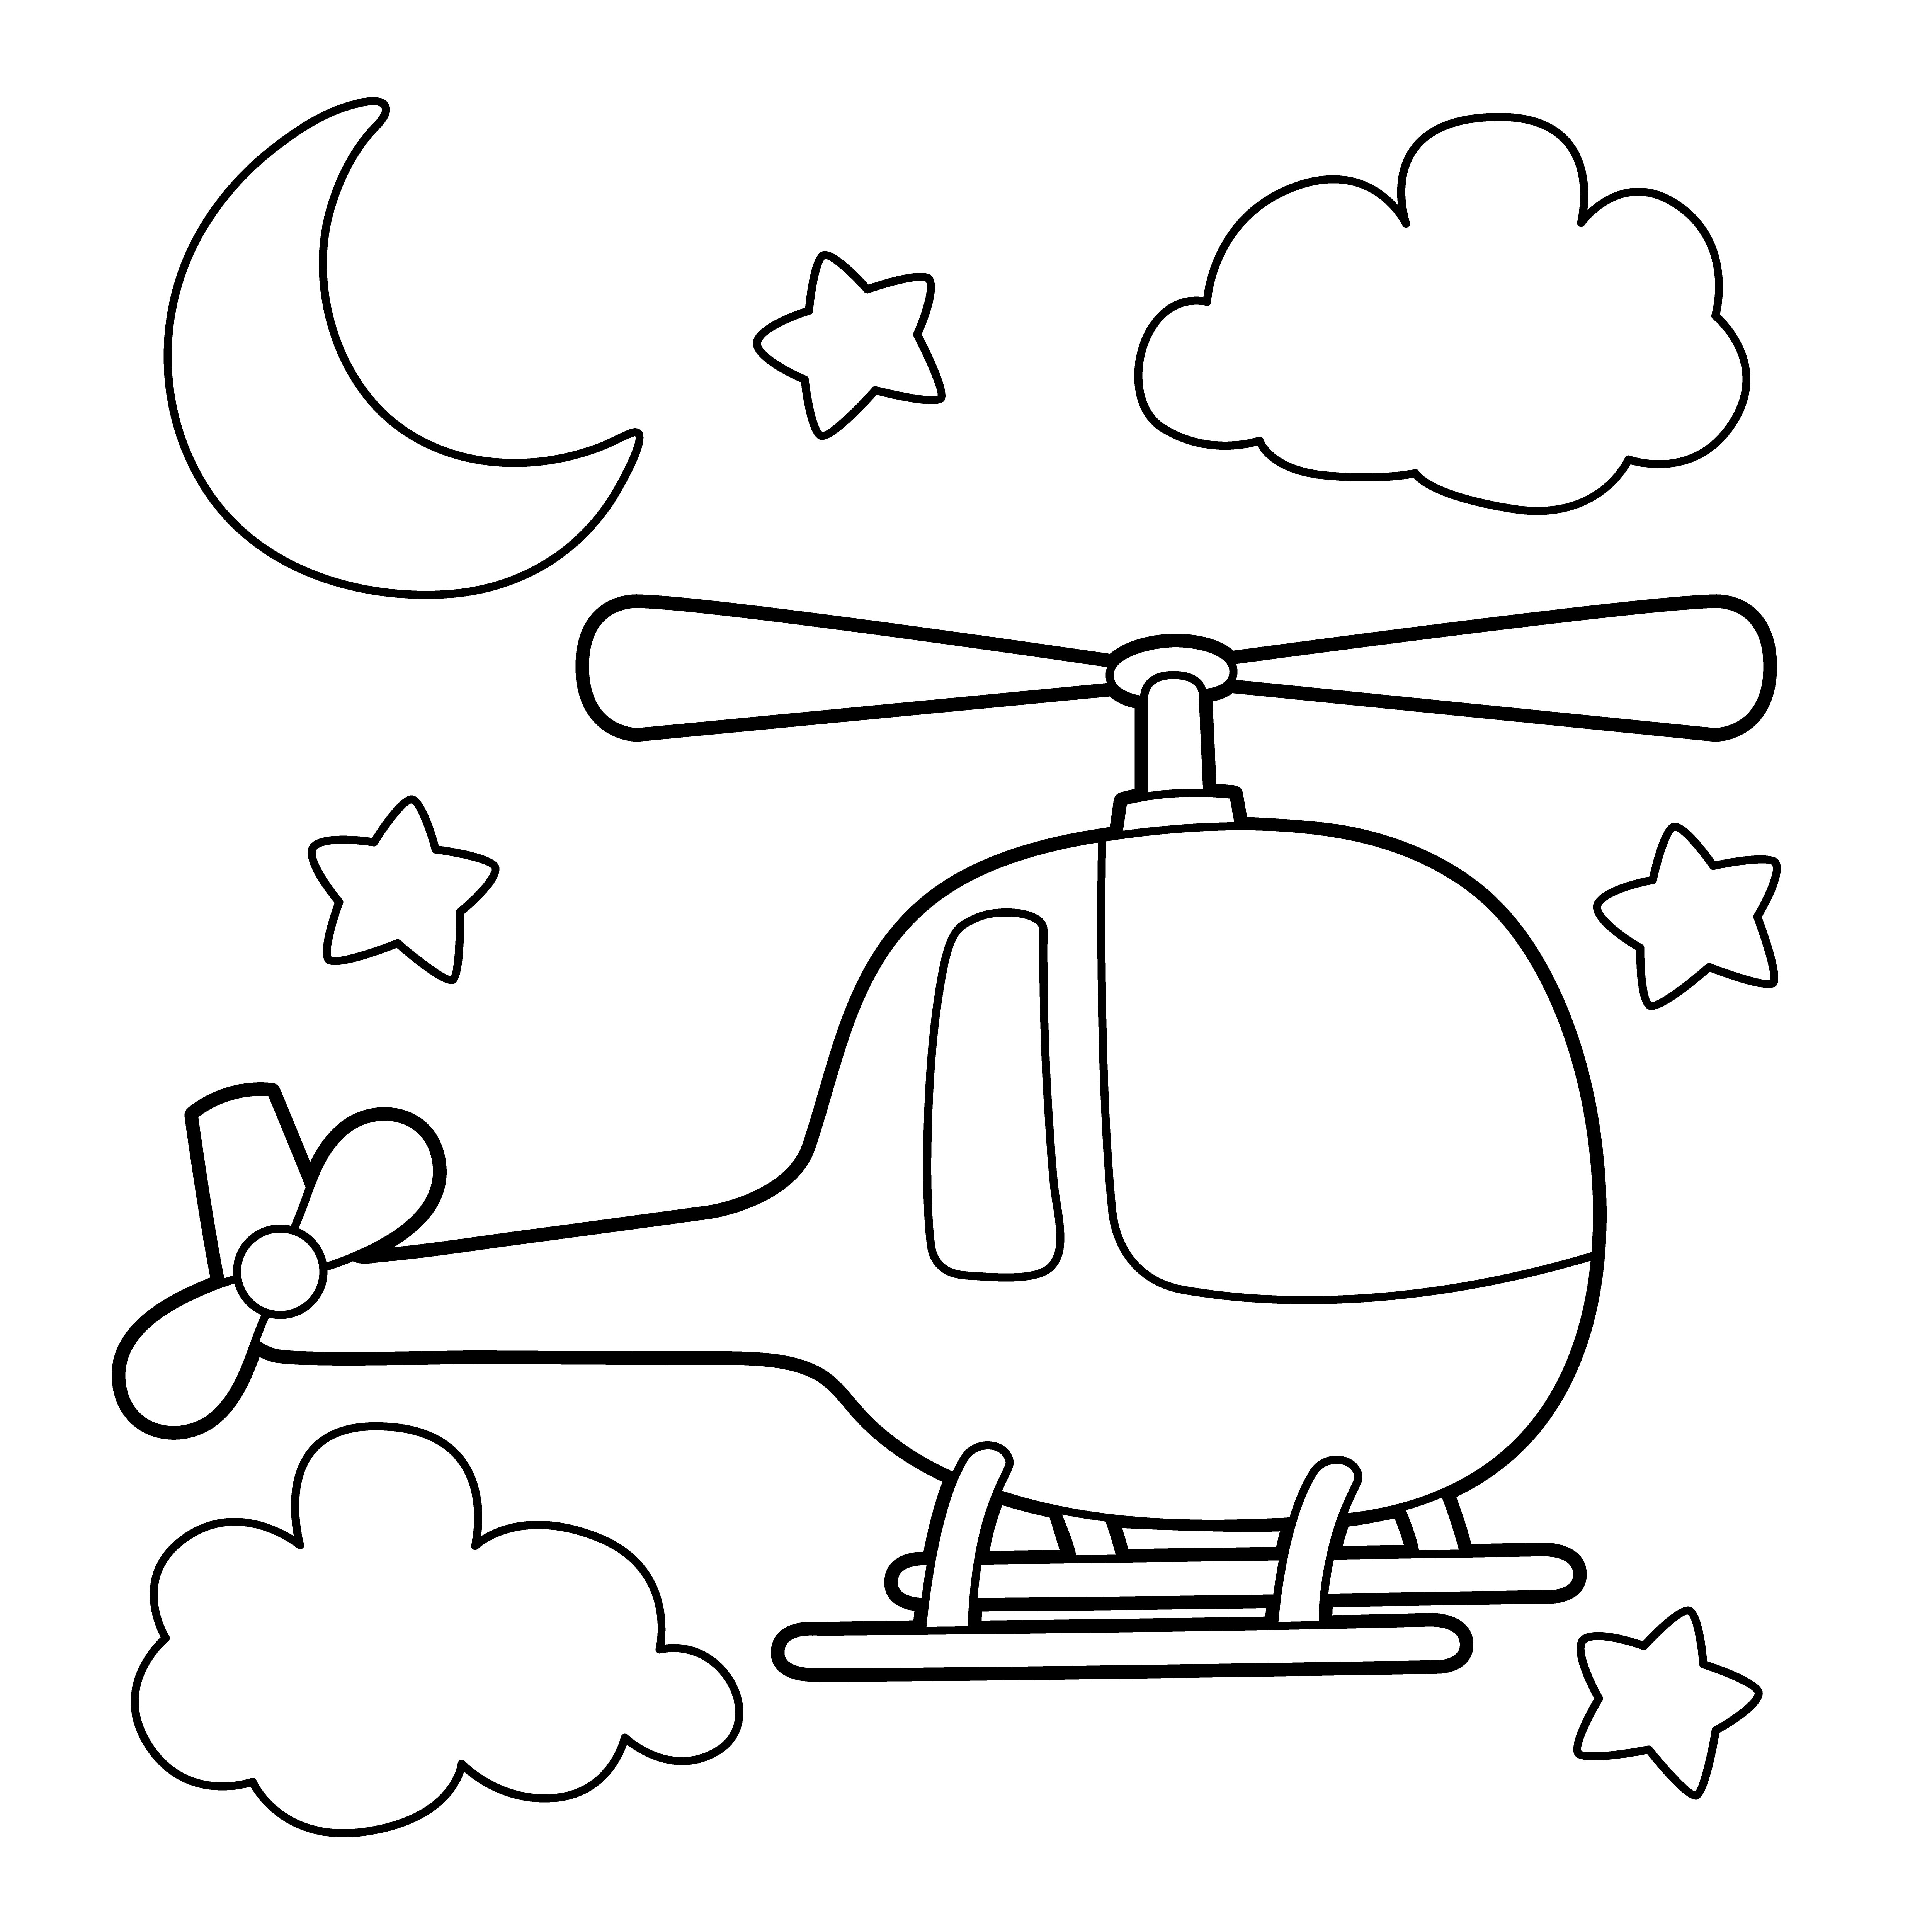 Раскраска игрушечный вертолет на фоне луны и звезд формата А4 в высоком качестве